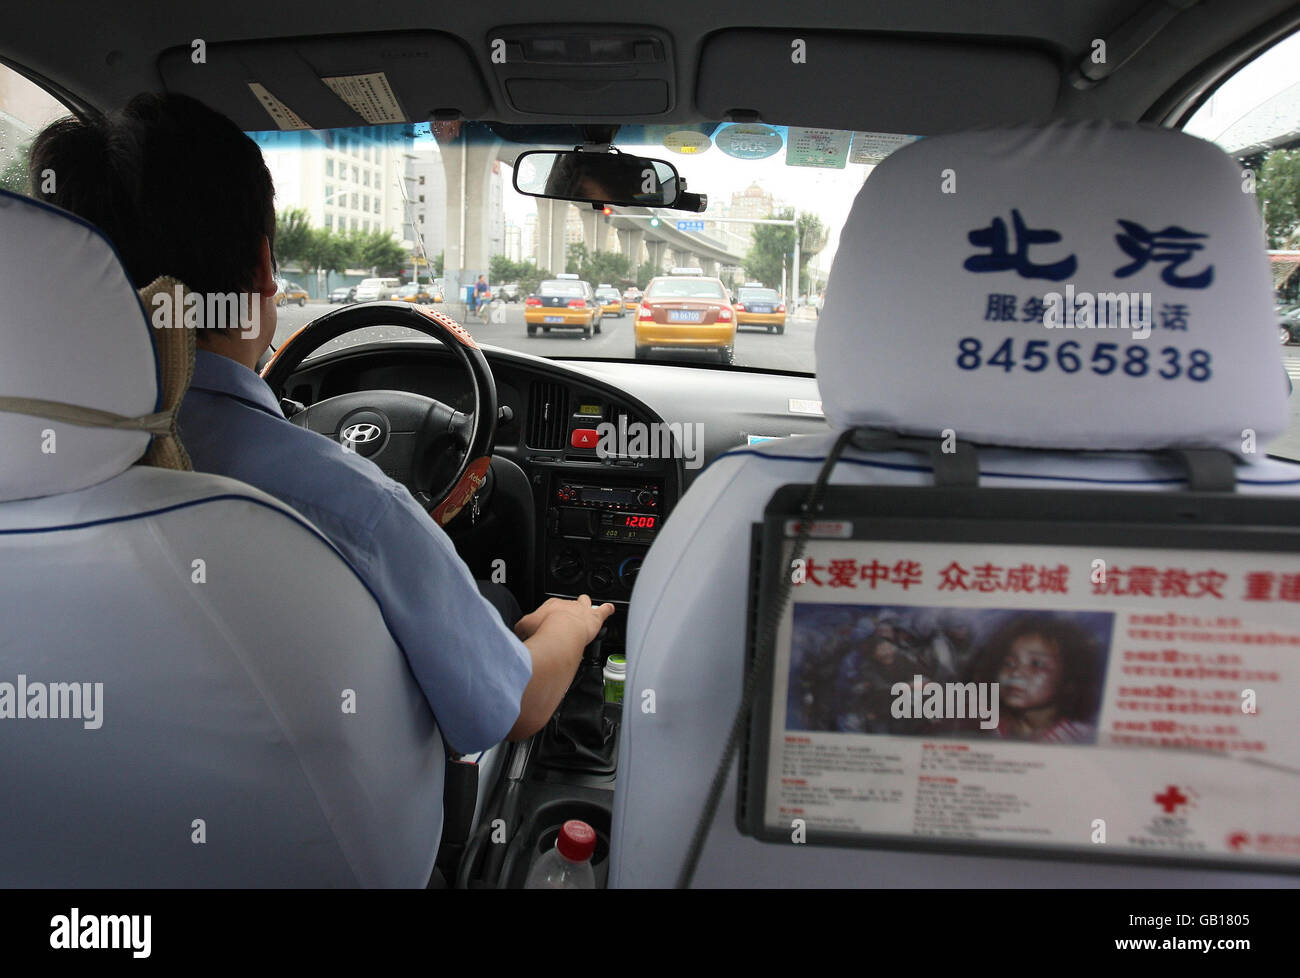 Olimpiadi - Giochi Olimpici di Pechino 2008. Una vista del traffico, dall'interno di un taxi vicino al lago di Hou Hai nella vecchia Pechino, Cina. Foto Stock